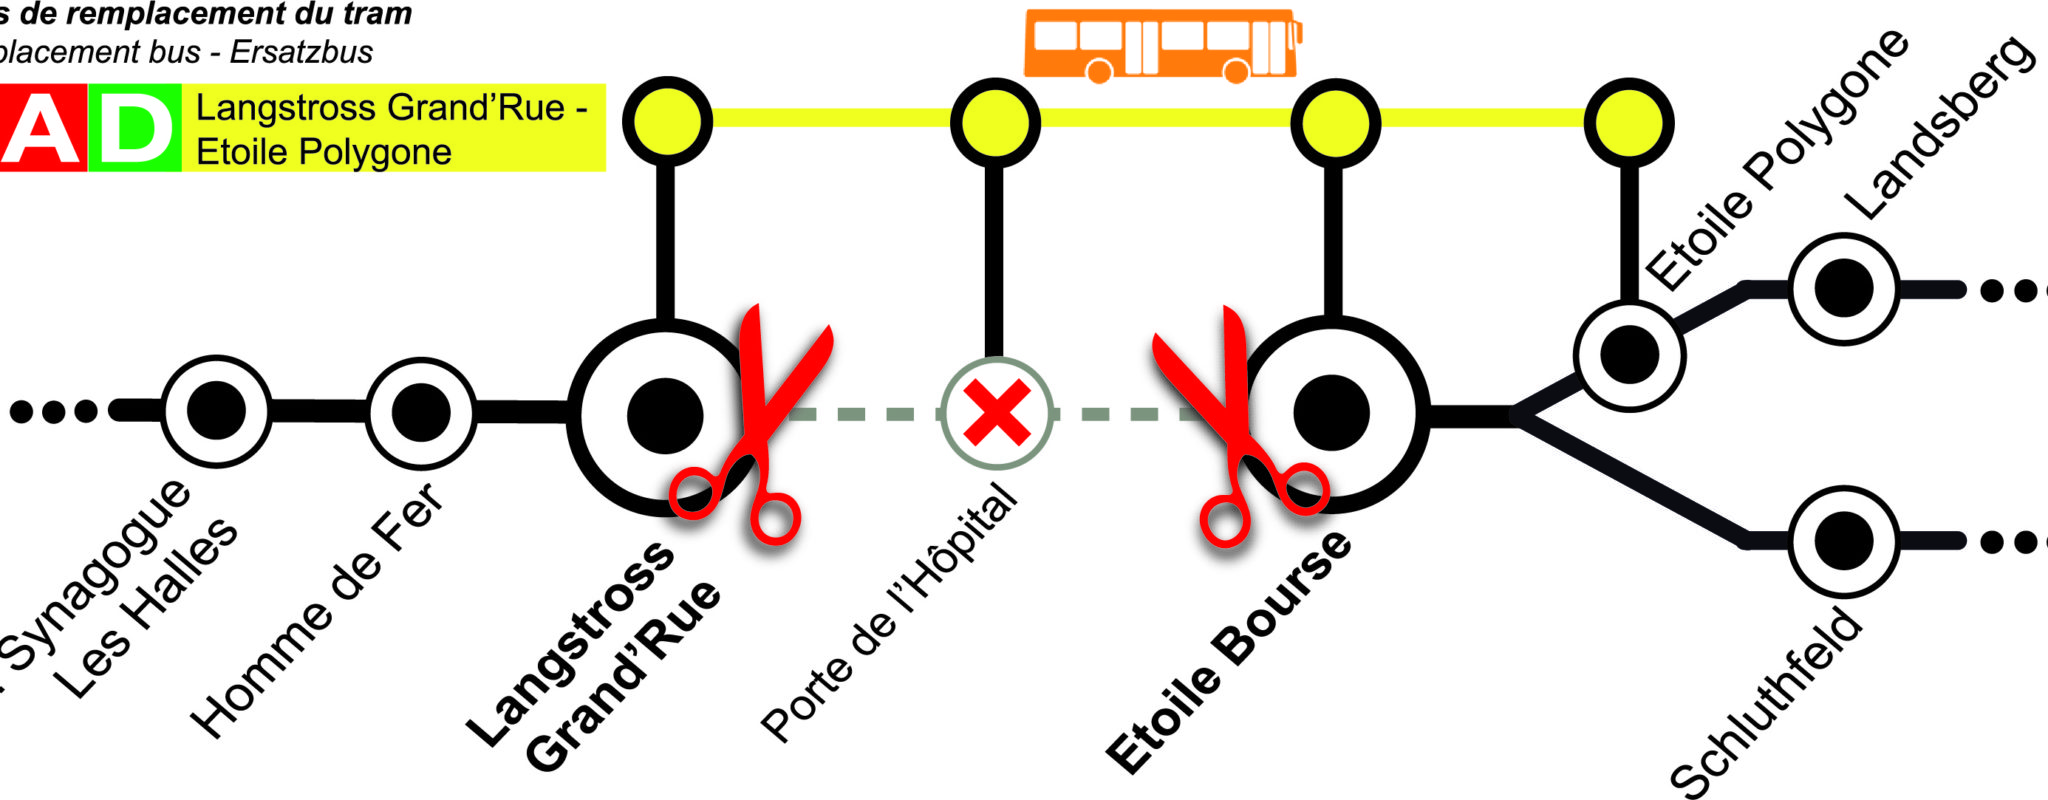 Du 31 juillet au 26 août, un bus à la place du tram entre Grand’Rue et Étoile Bourse